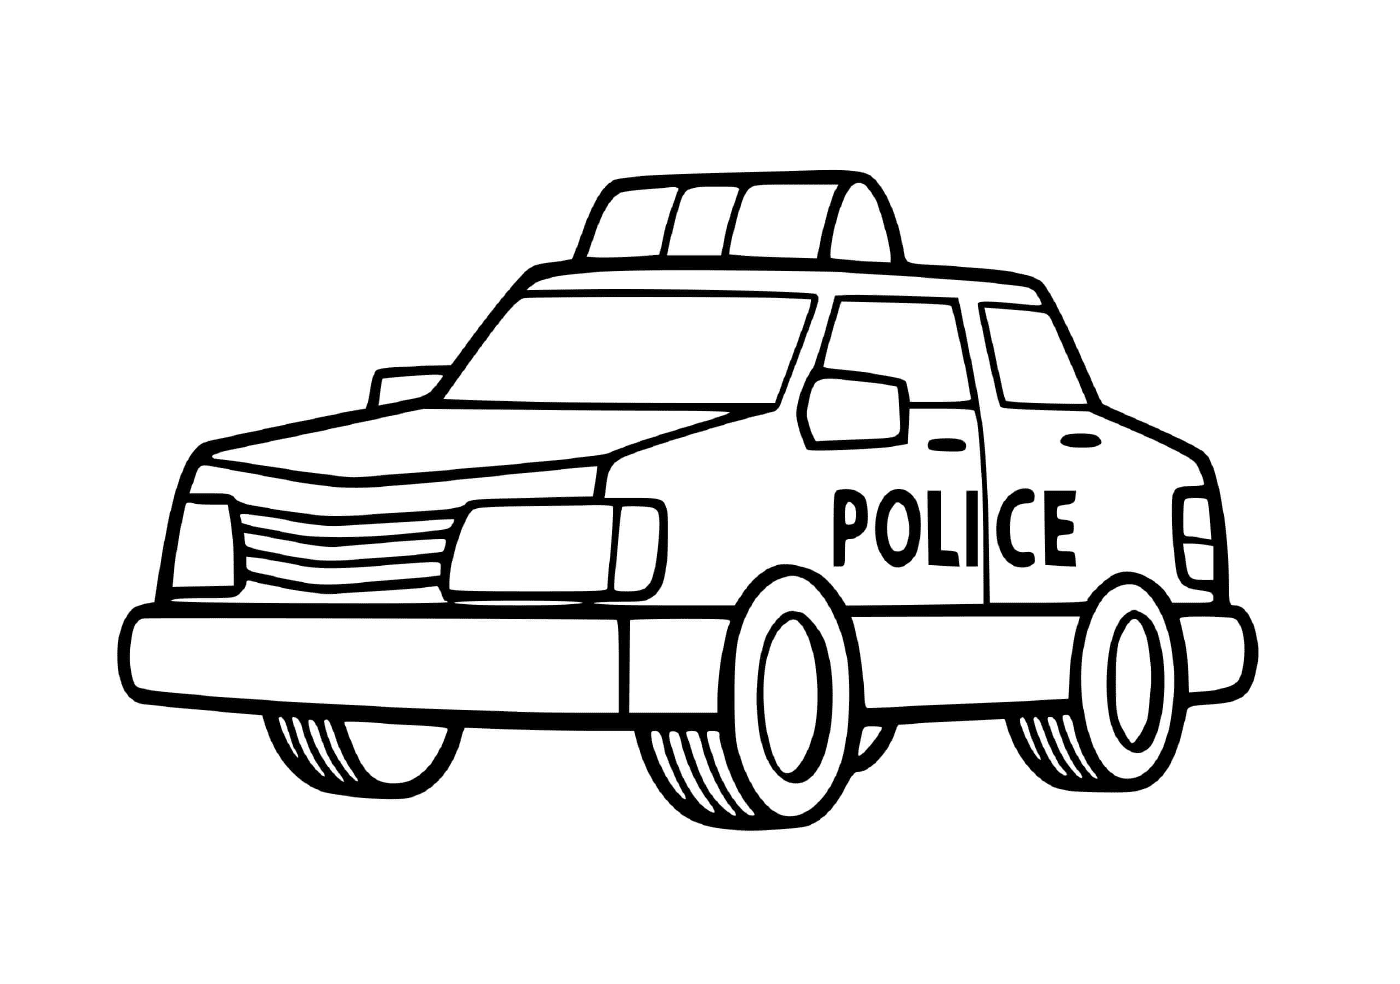  سيارة الشرطة لرياض الأطفال 